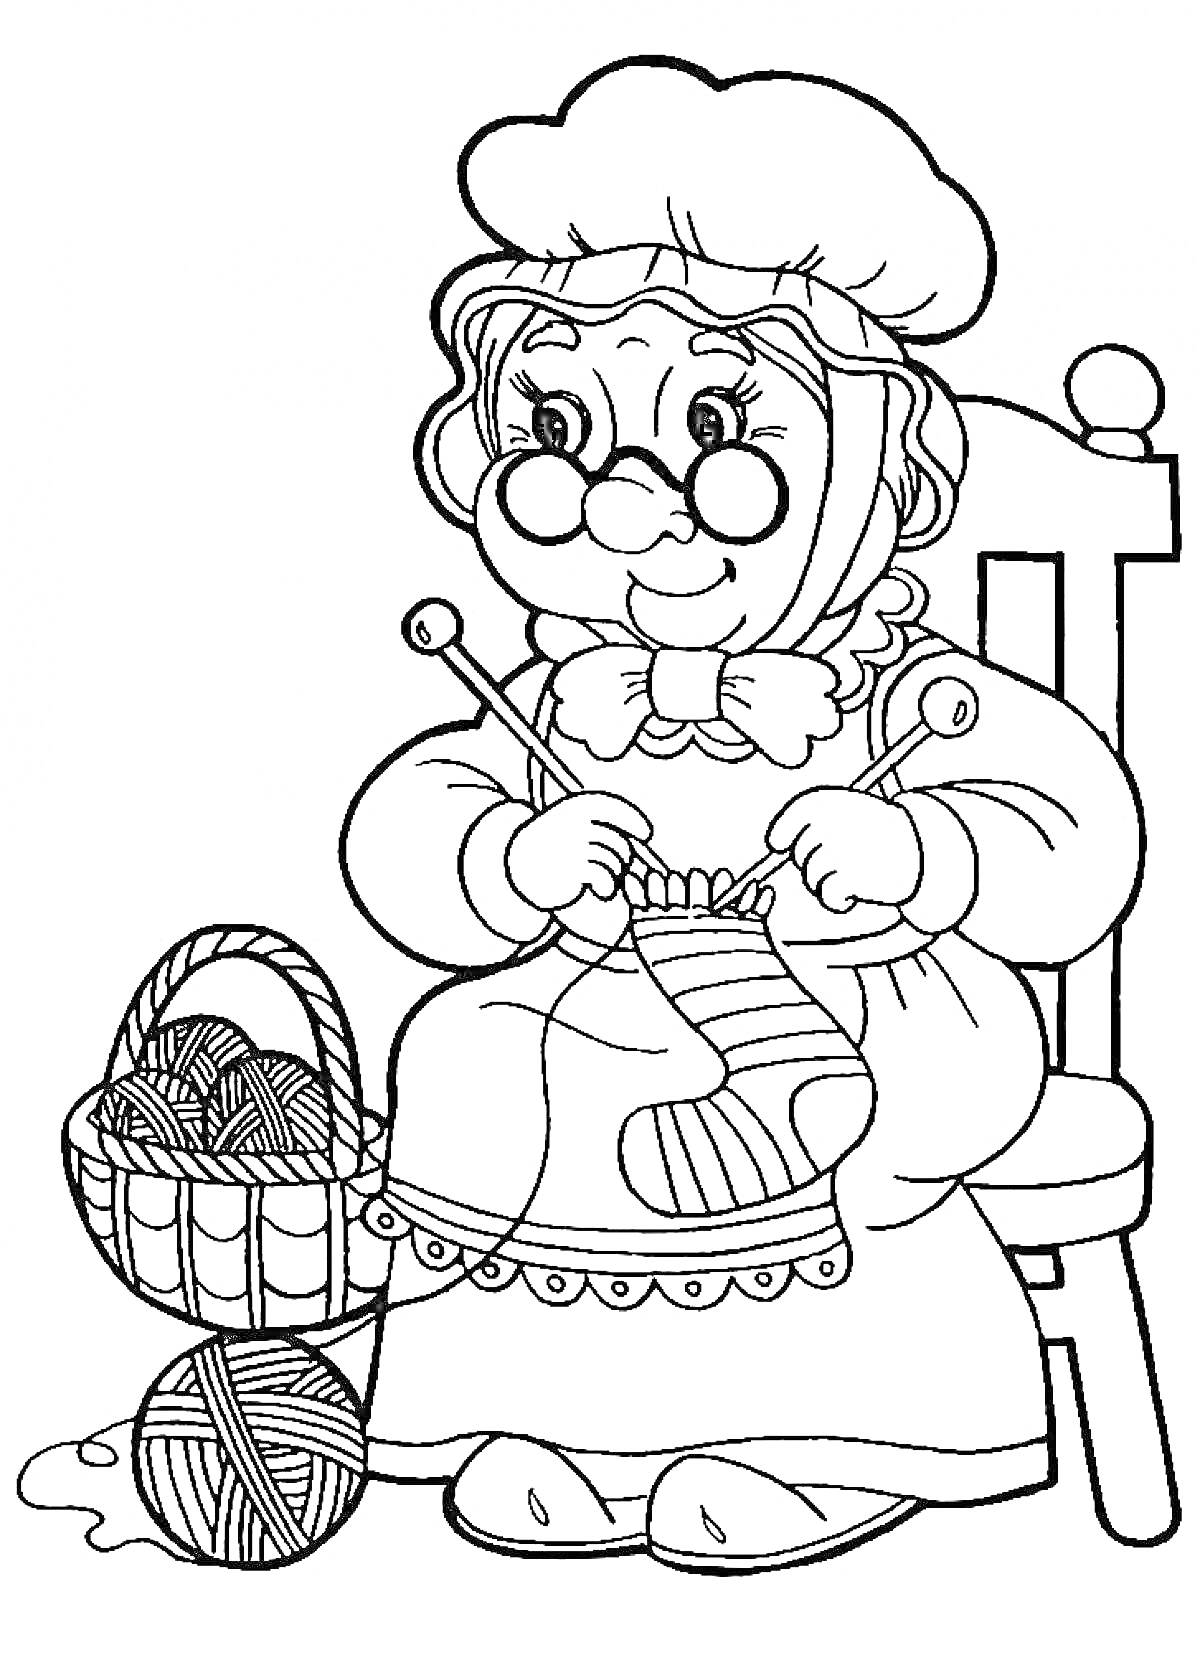 Бабушка в очках и чепце вяжет на спицах, сидя на стуле с корзиной клубков пряжи рядом